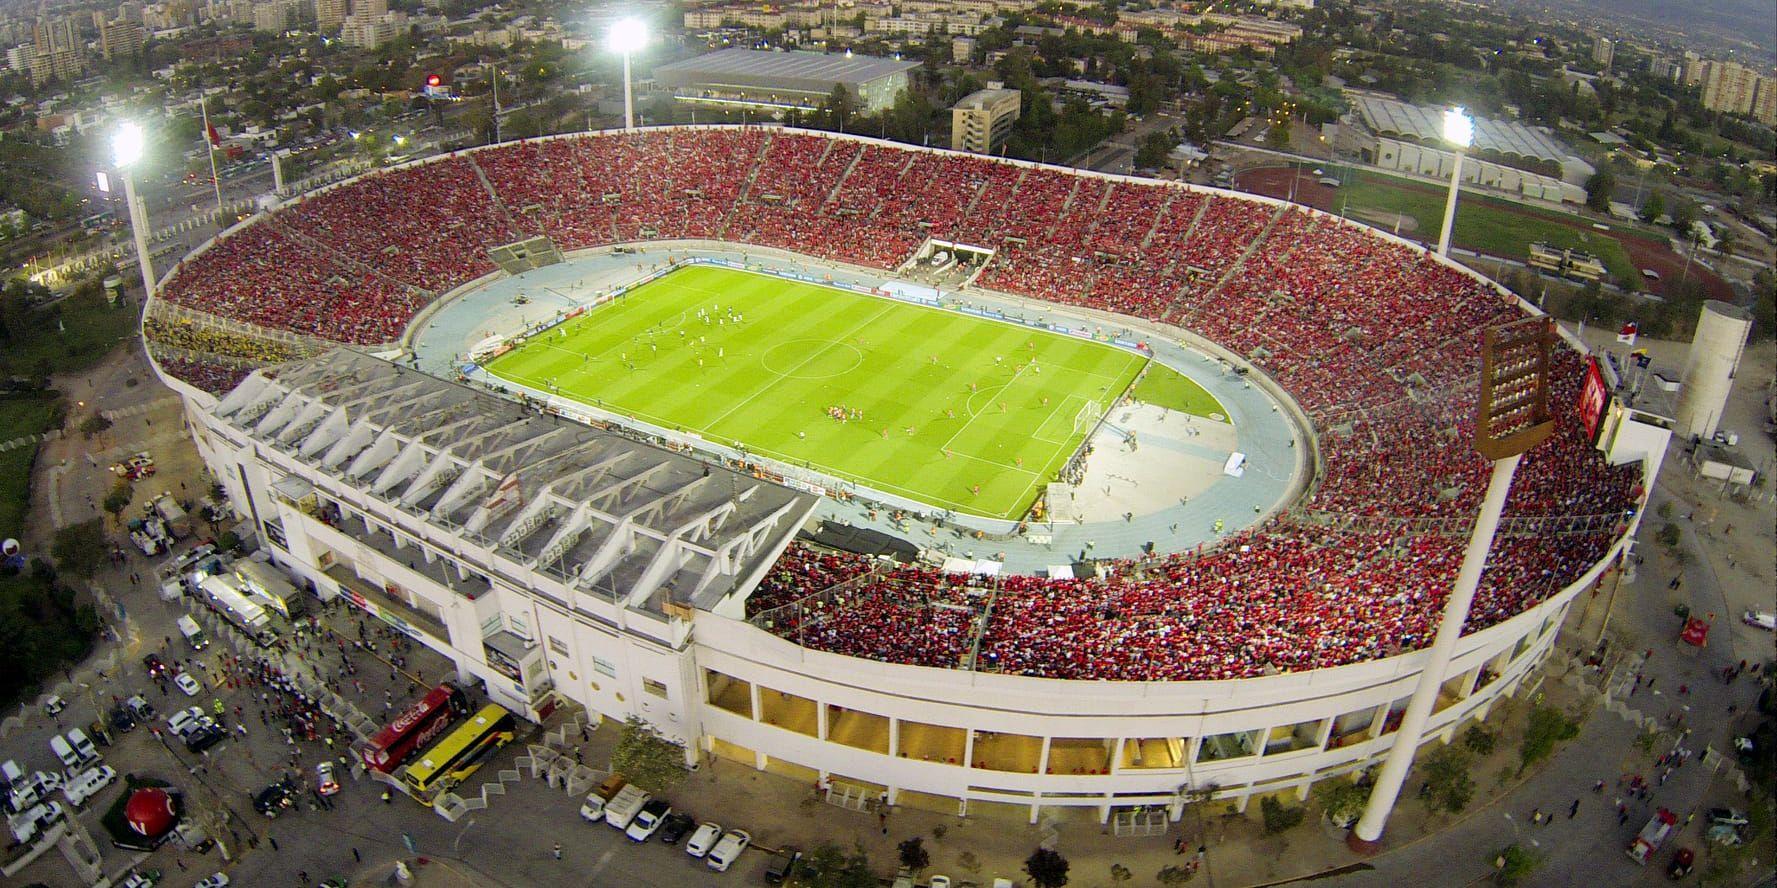 Trots att Stadion i Santiago de Chile användes som tortyrläger under militärkuppen samma höst spelade ändå VM-kval där 1973.